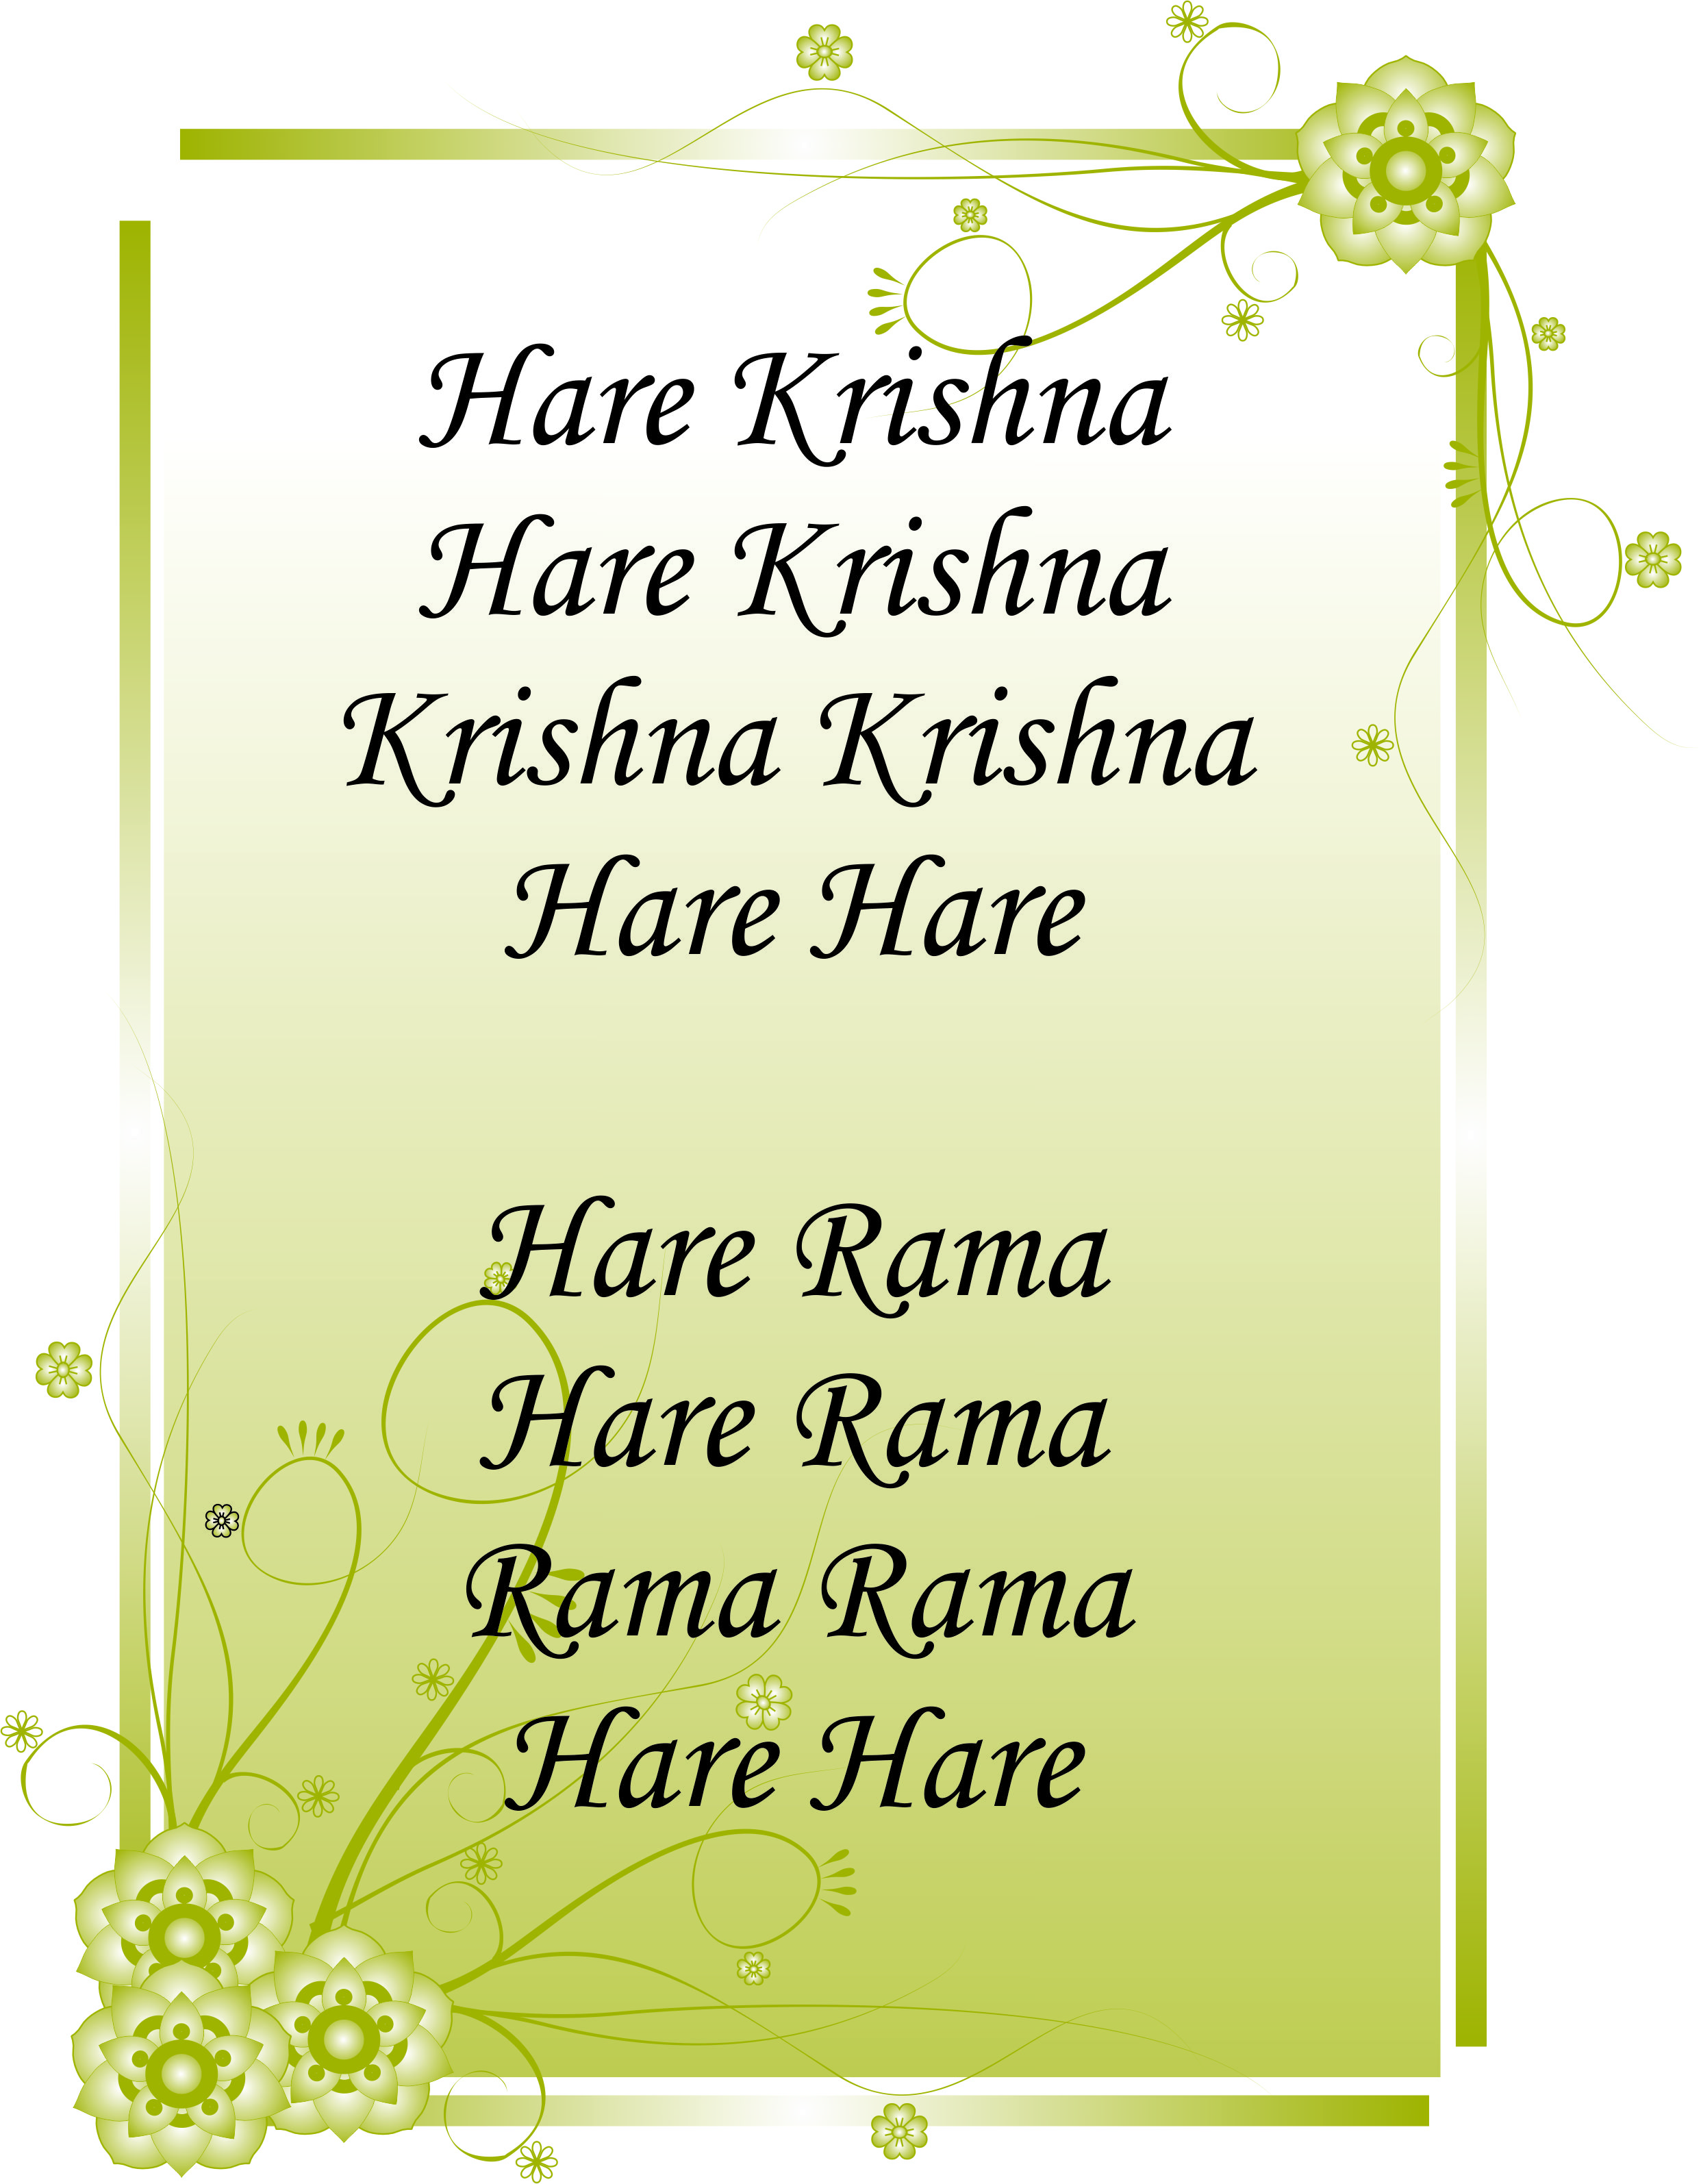 1 volta de japa, meditação mântrica, com o maha-mantra Hare Krishna 